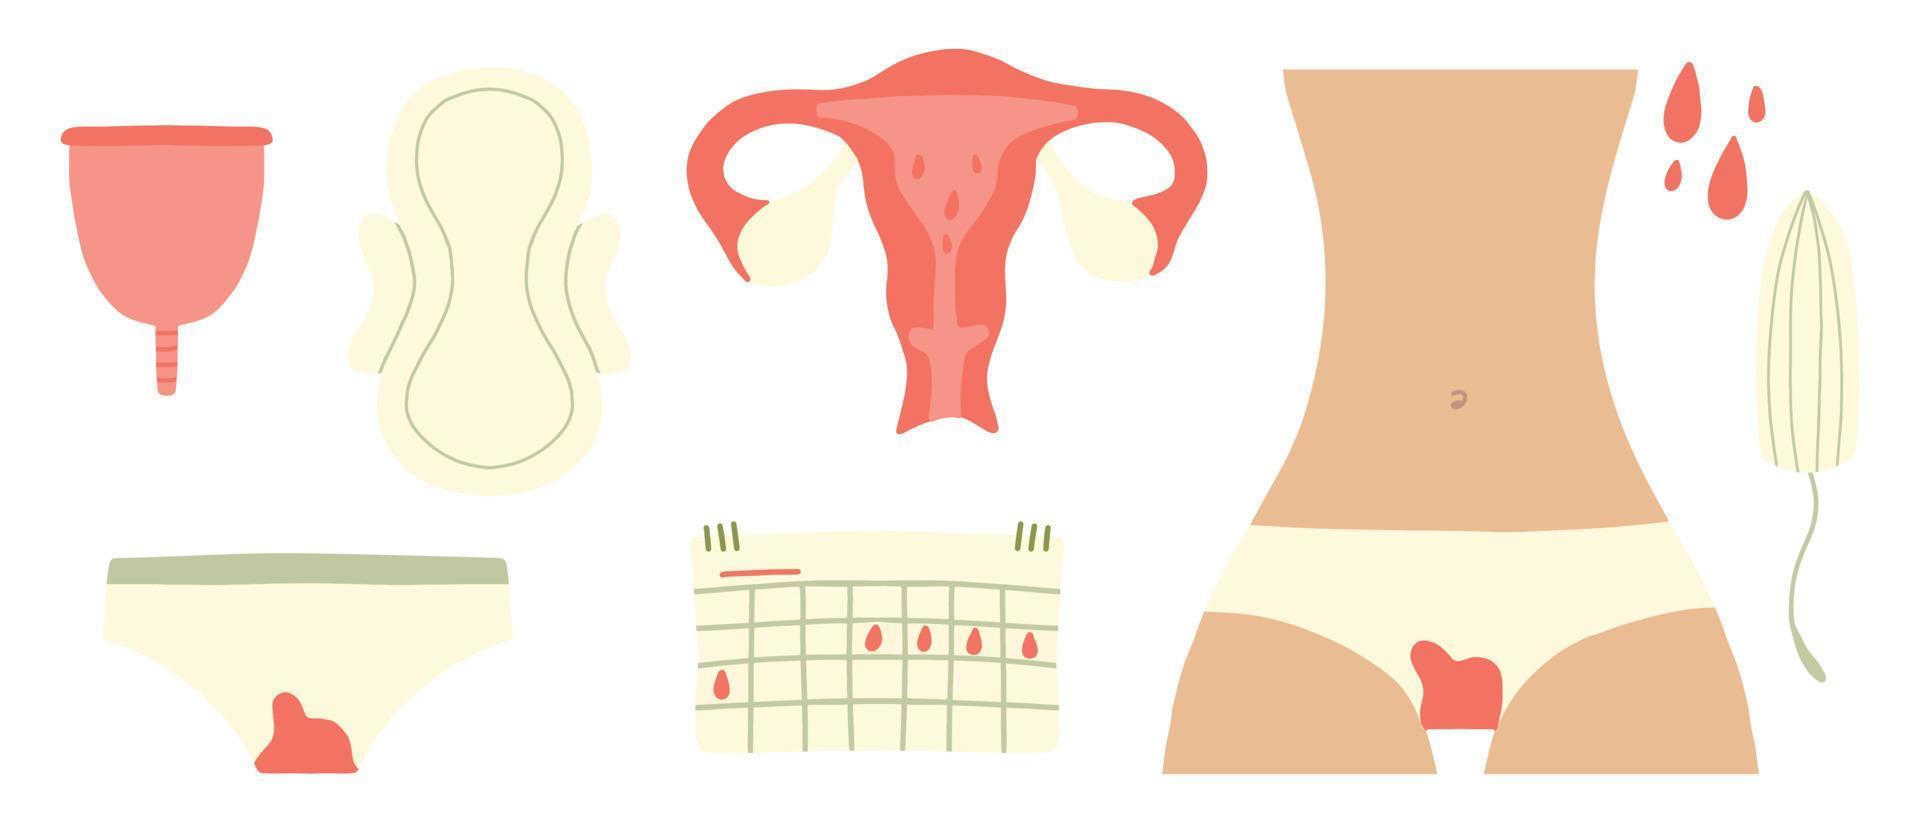 menstruação feminina. mulheres com tampão menstrual e produto de higiene, absorventes higiênicos e copo menstrual. período de menstruação, ilustração de tampão acessório menstrual. vetor